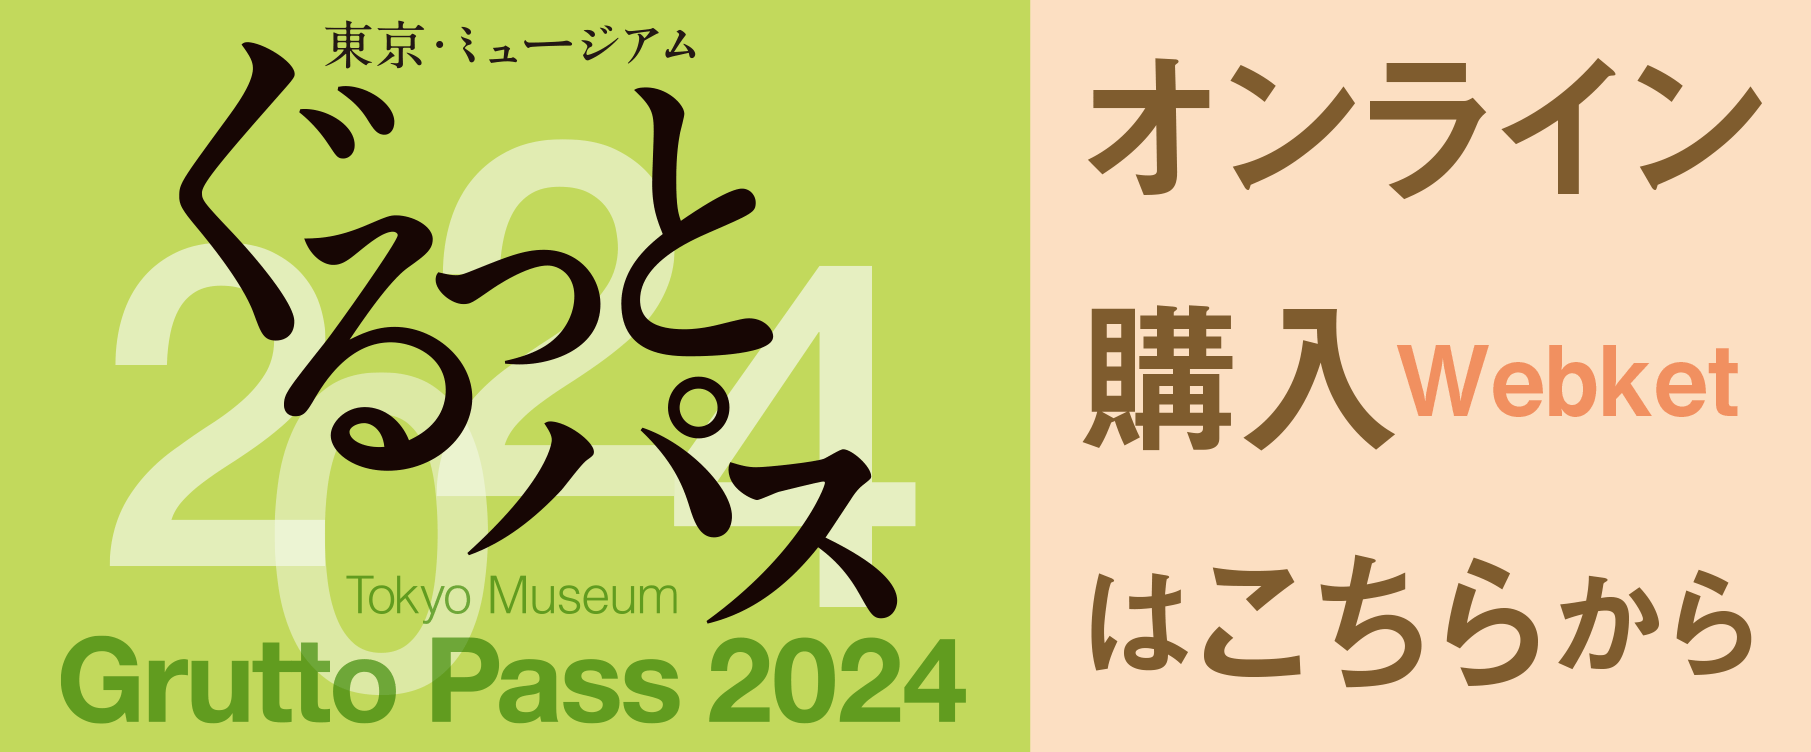 東京・ミュージアム ぐるっとパス 2024 オンライン購入はこちらから